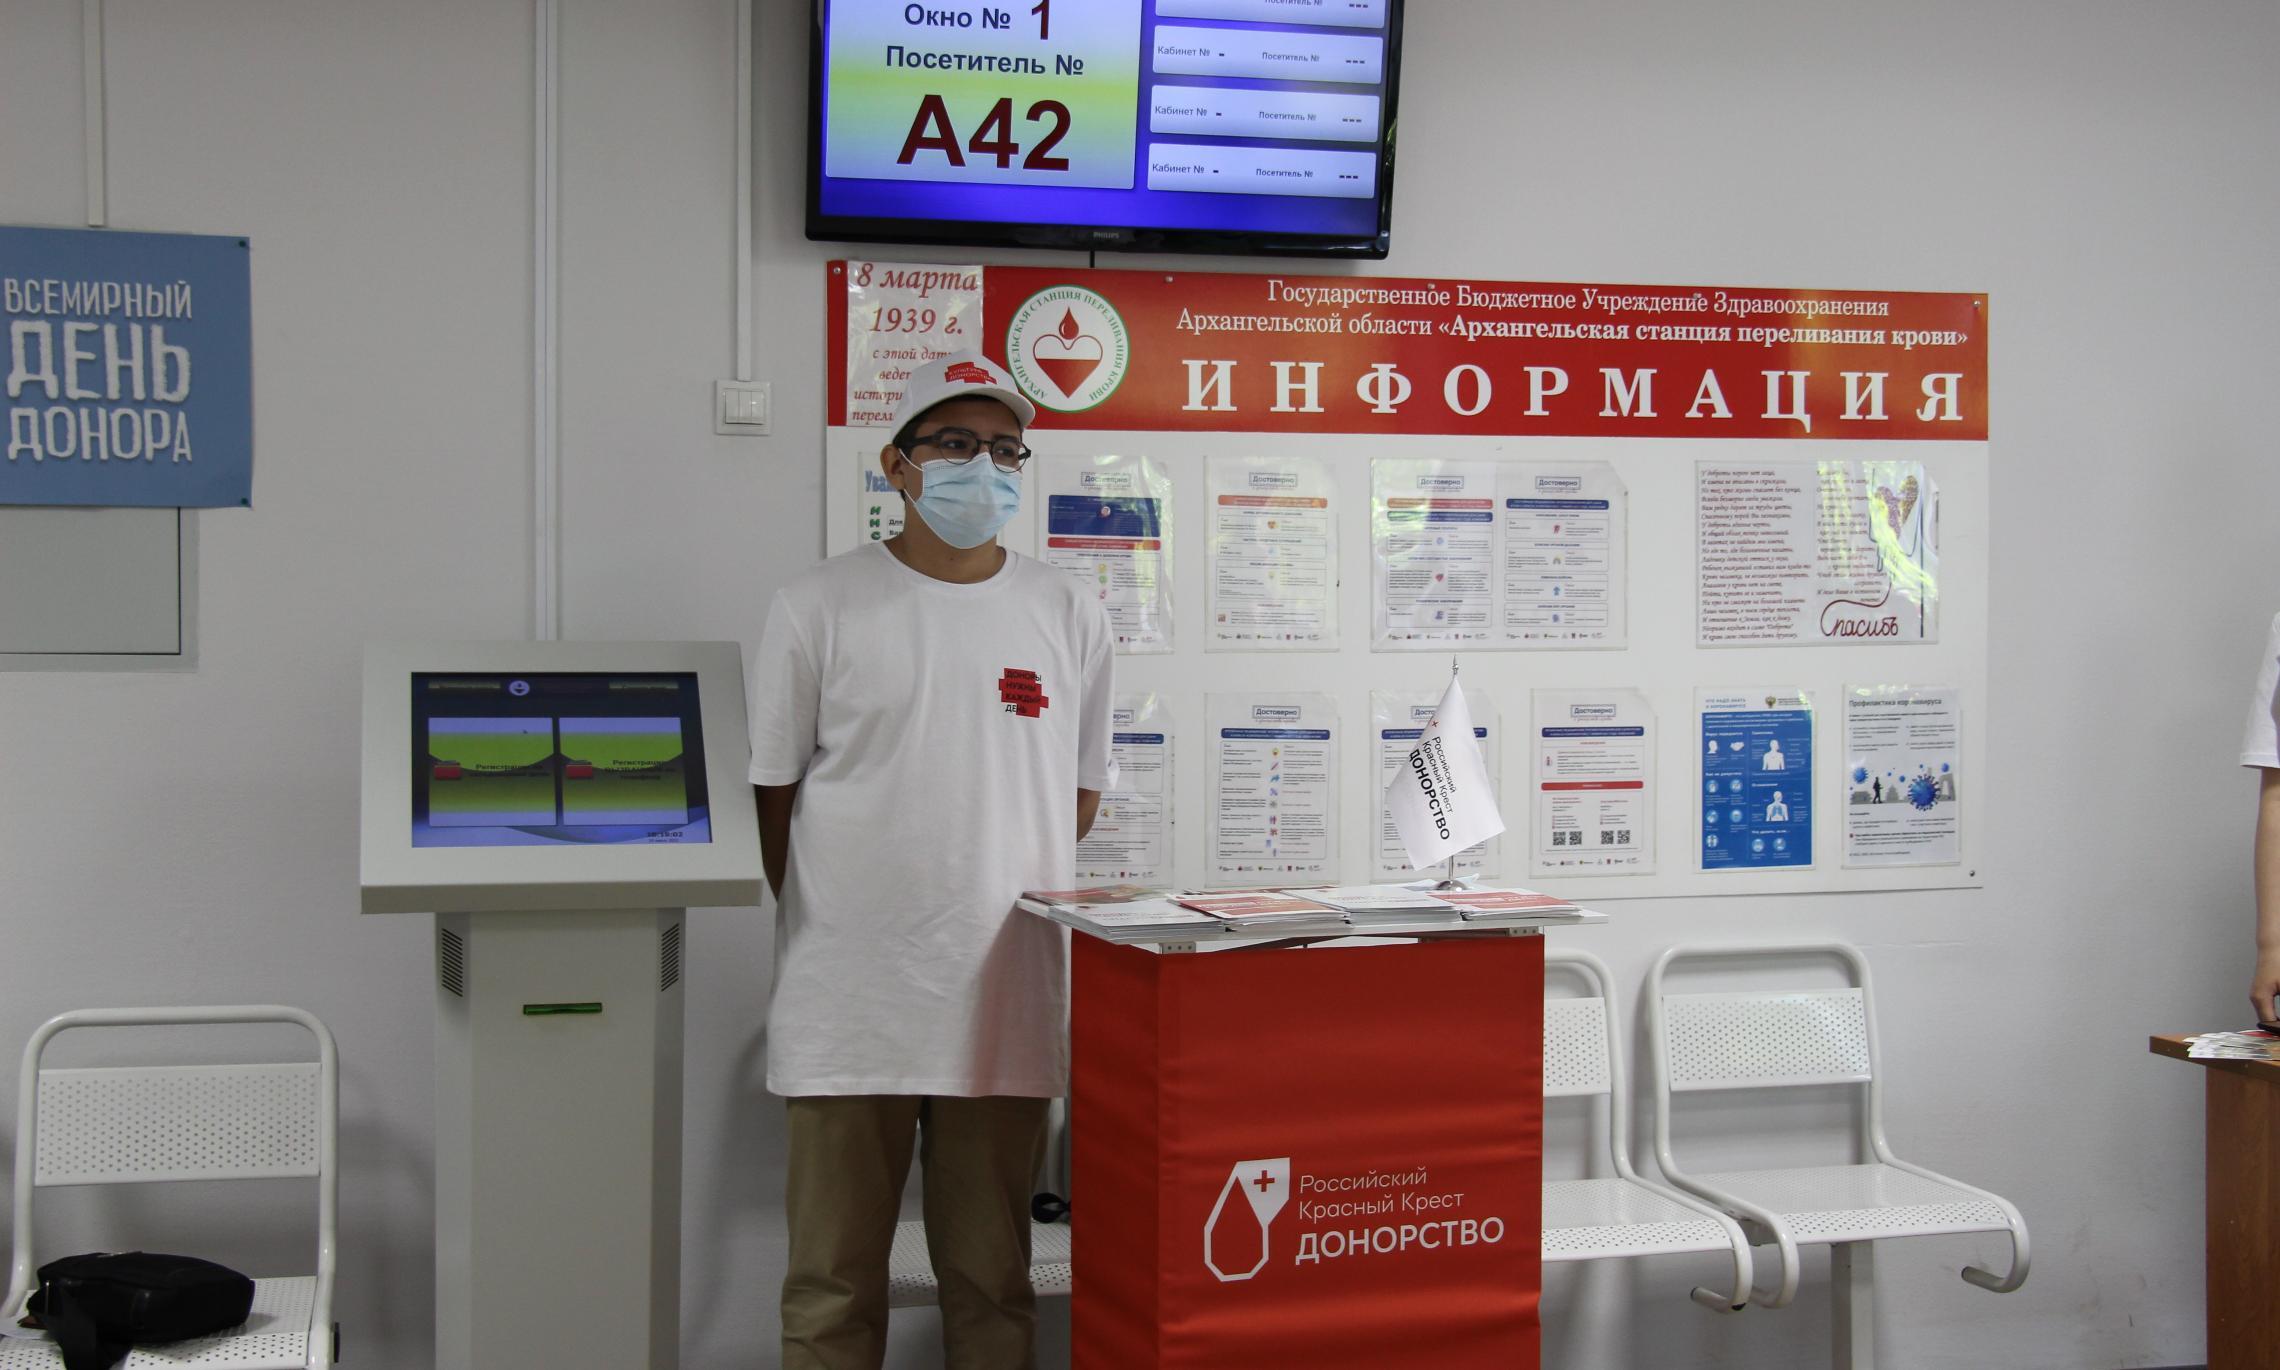 Первый этаж Архангельской станции переливания крови.